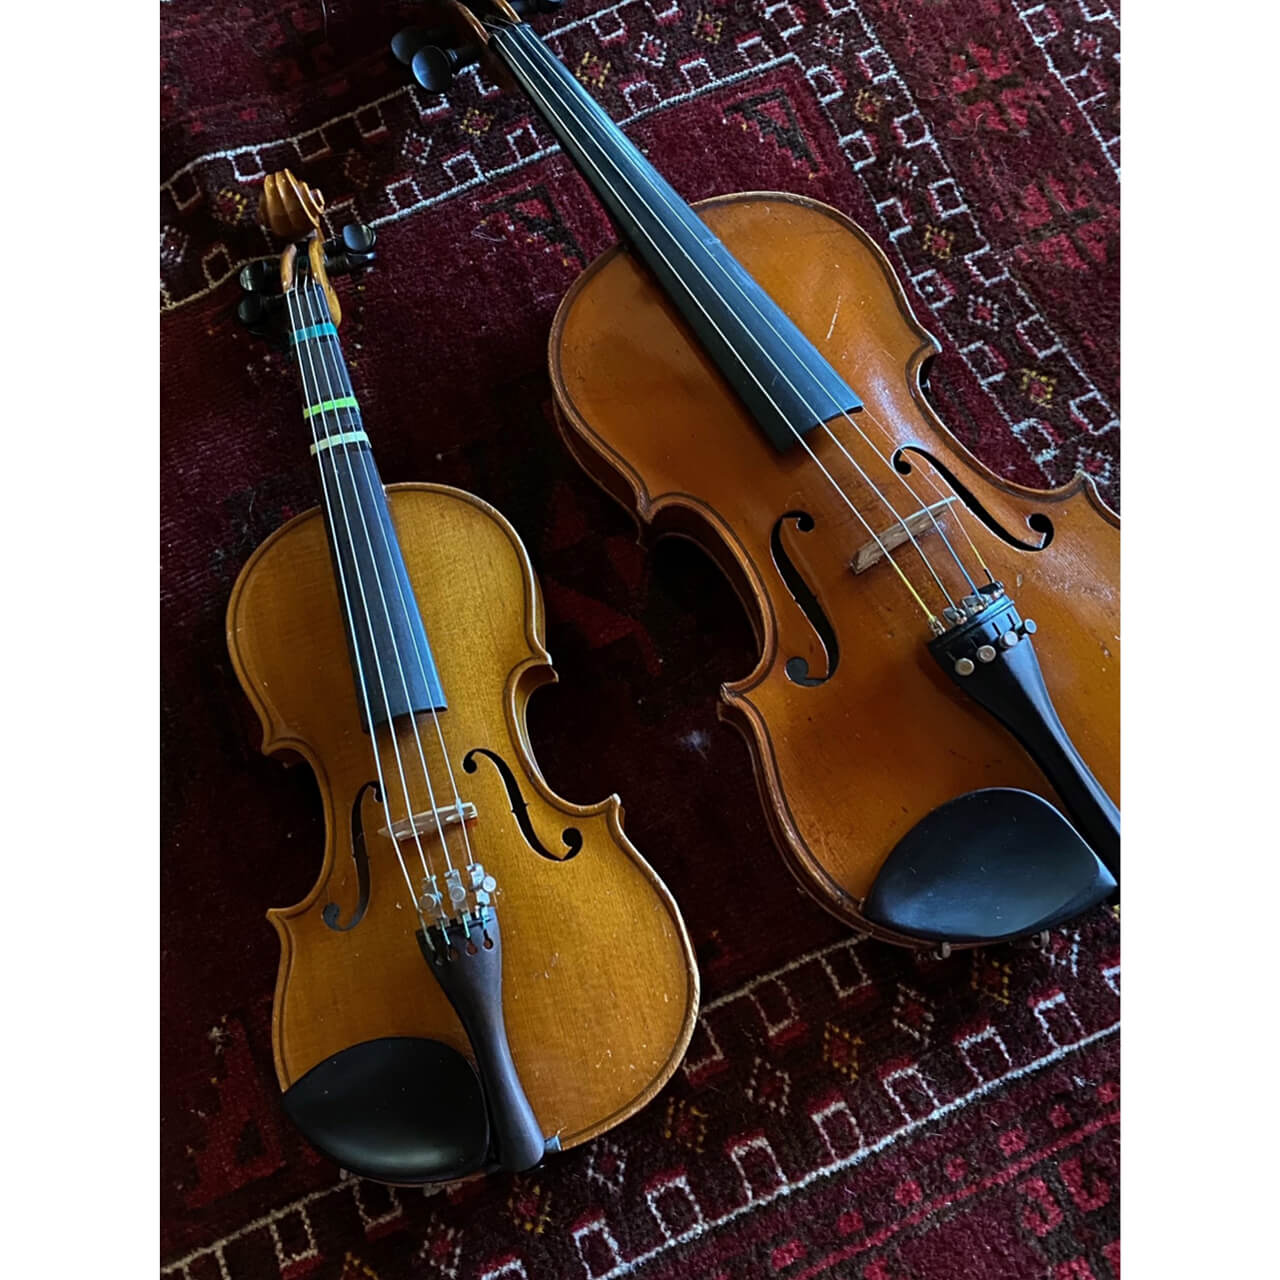 親子でサイズの違うヴァイオリン。砂原さんが小さい頃に使っていた楽器を娘さんが現在使用。